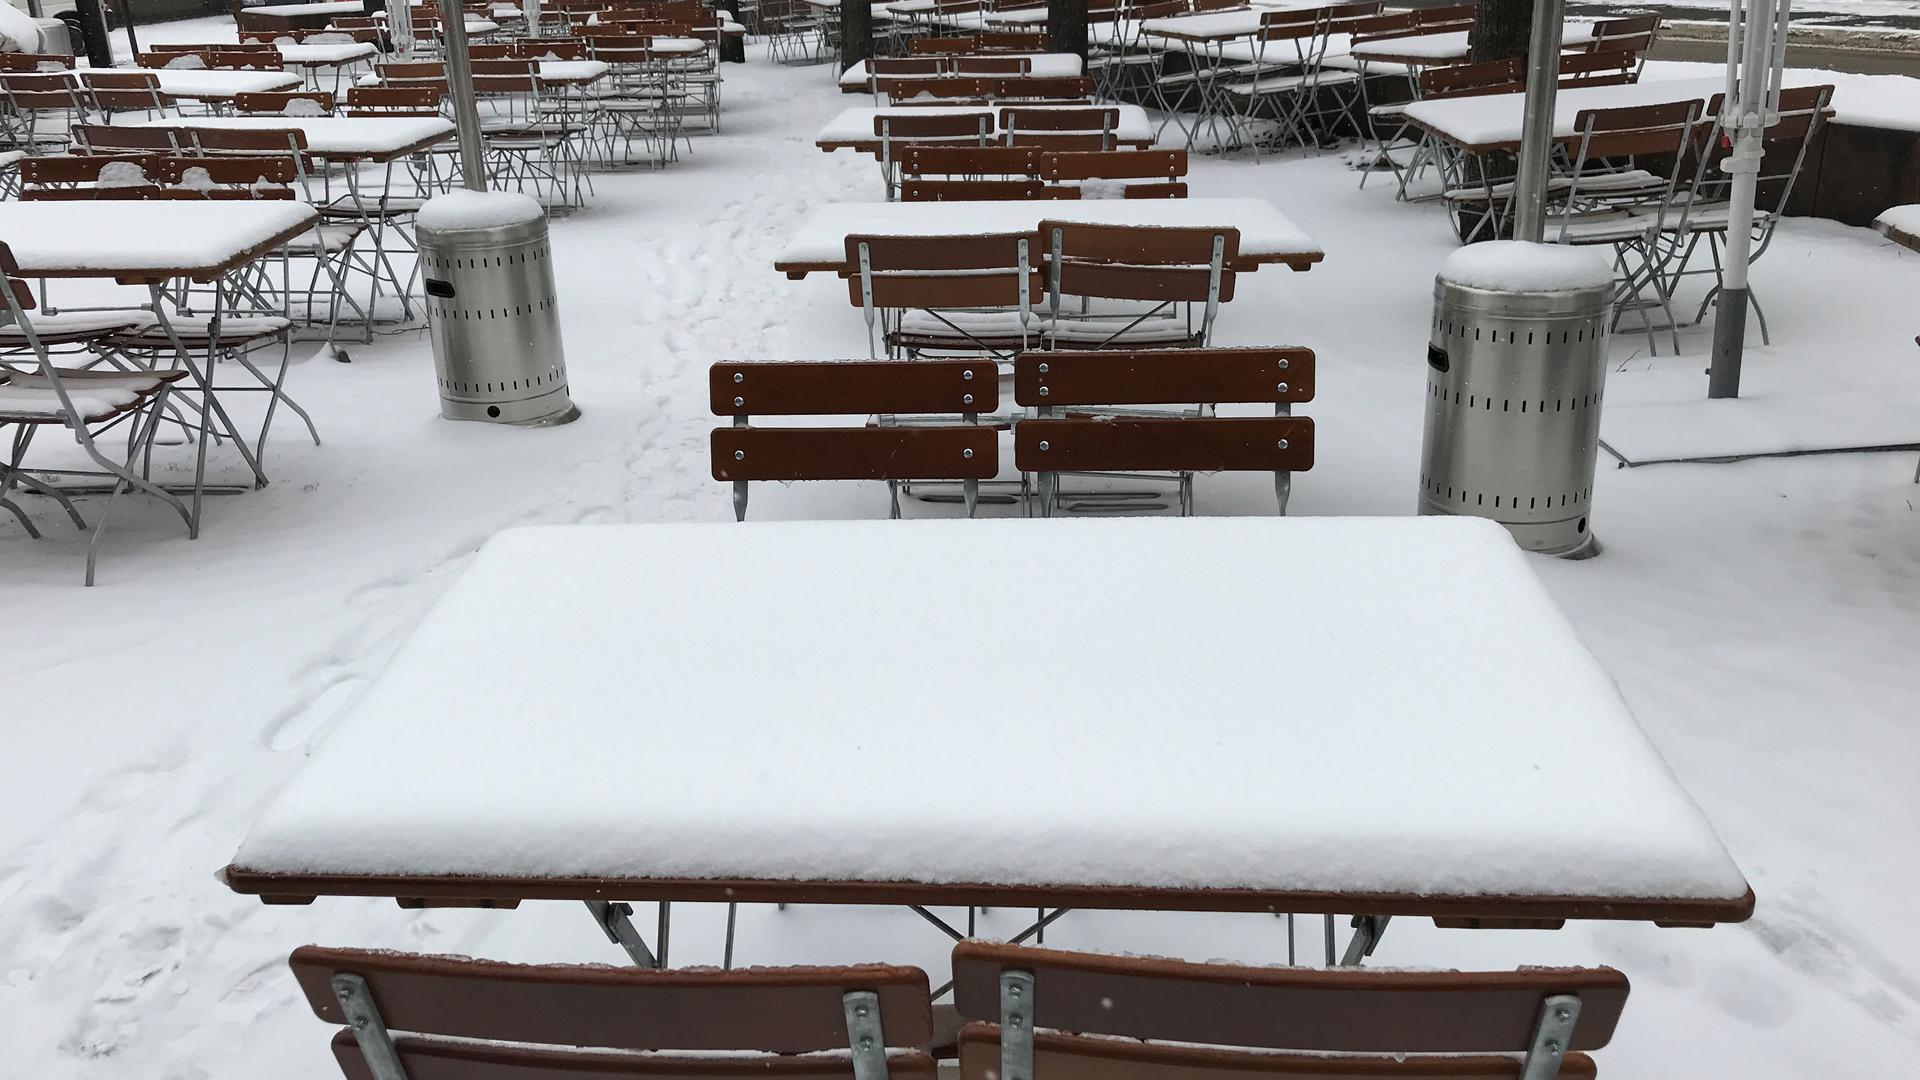 Mehrere Tische und Stühle, Außenbereich eines gastronomischen Betriebs, alles ist bedeckt von einer Schneeschicht.